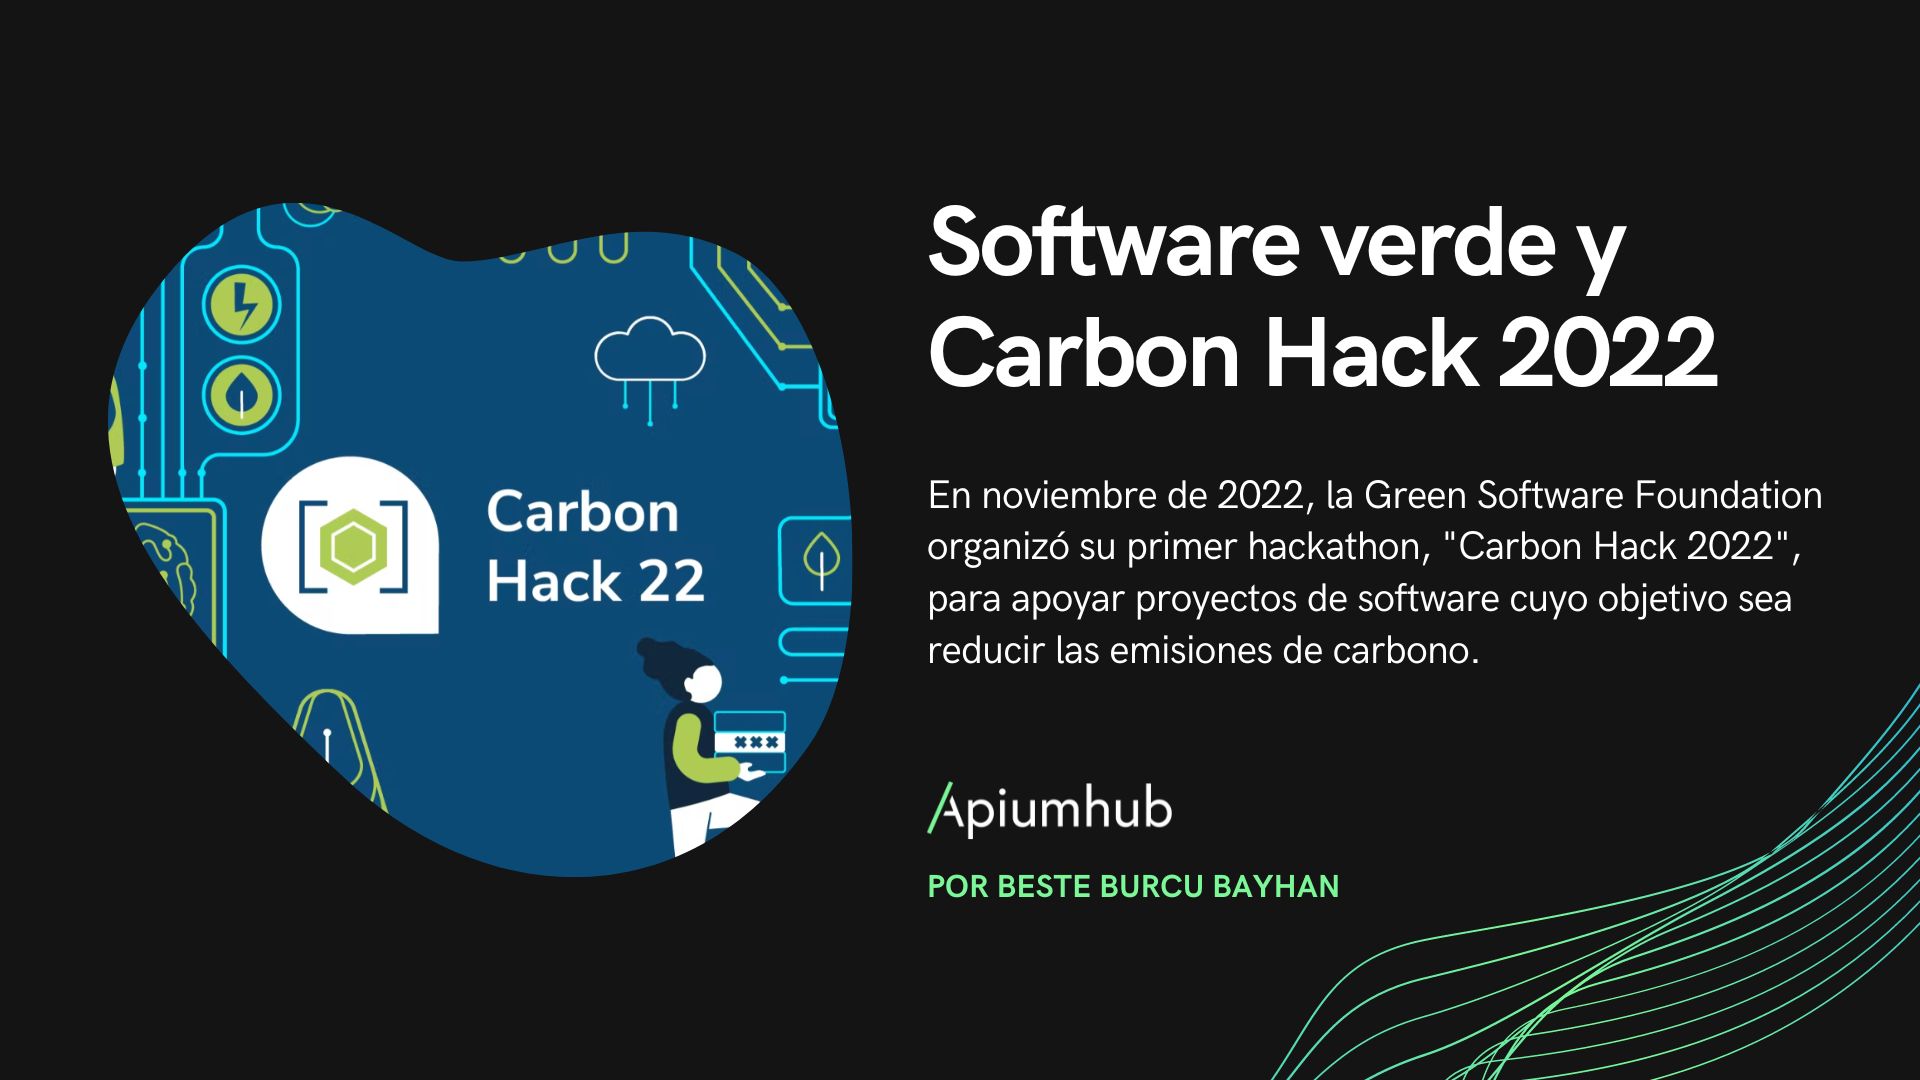 Software verde y Carbon Hack 2022